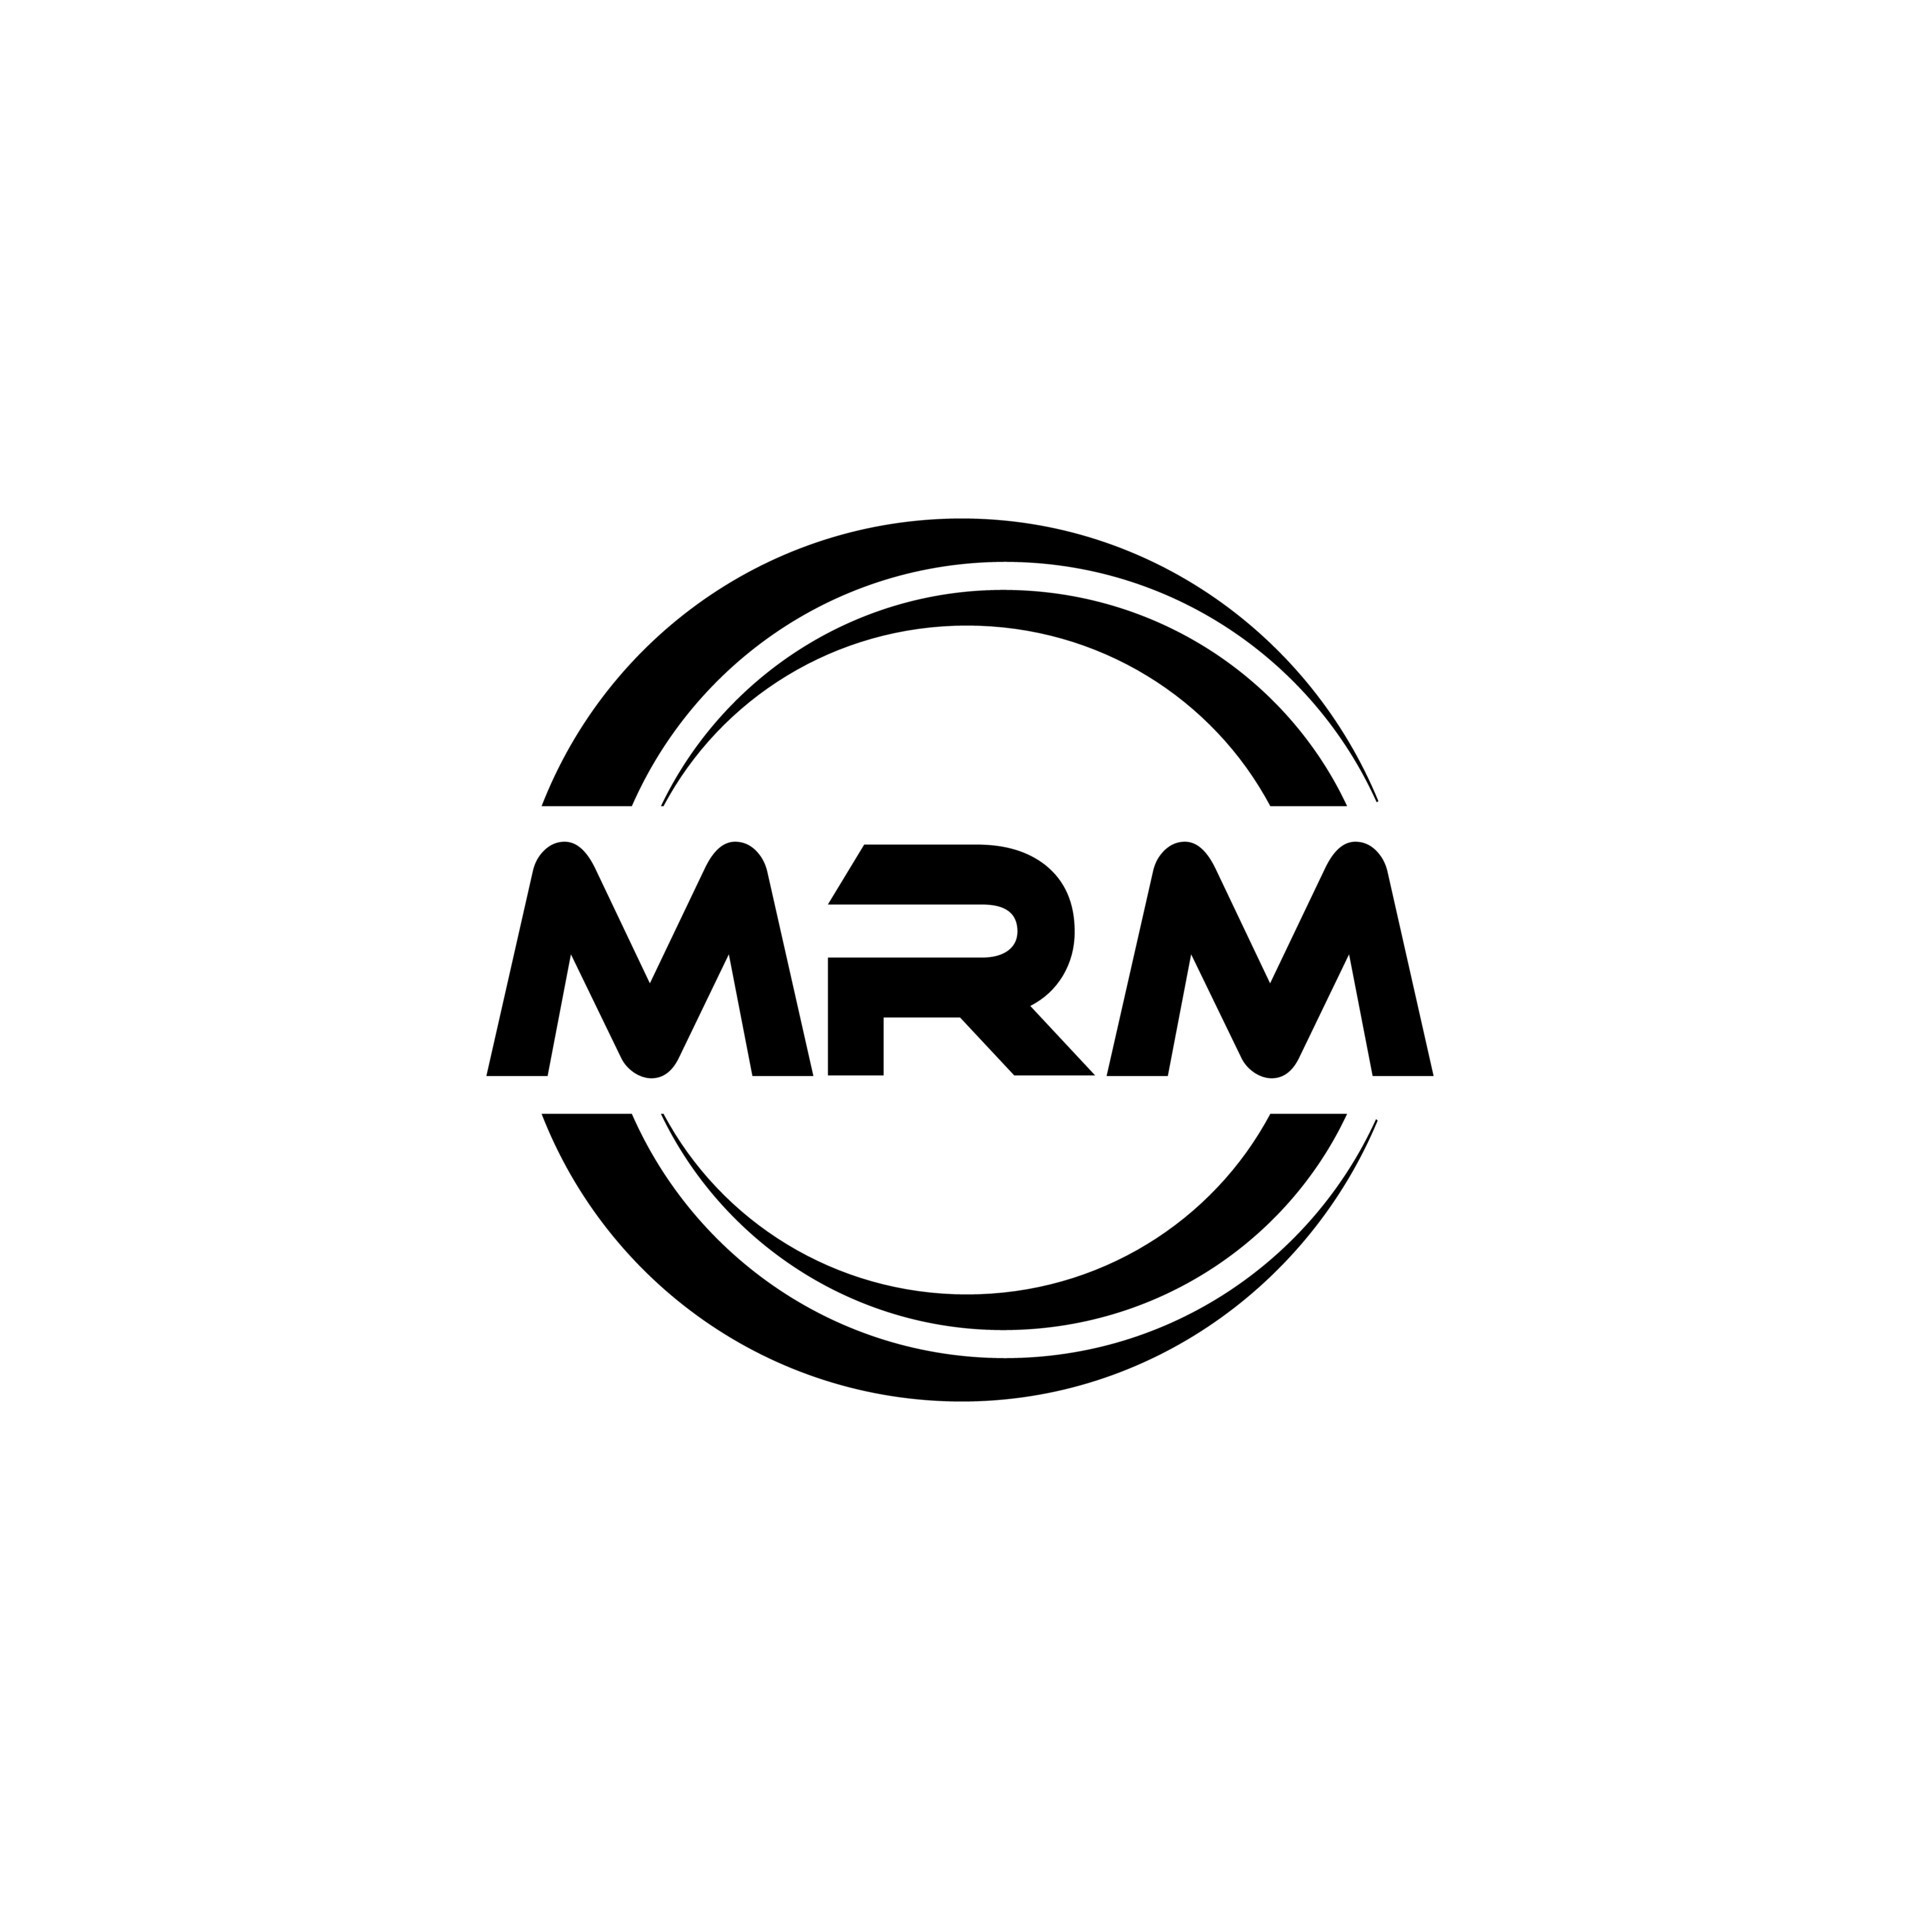 Mrm needs a new logo | Logo design contest | 99designs